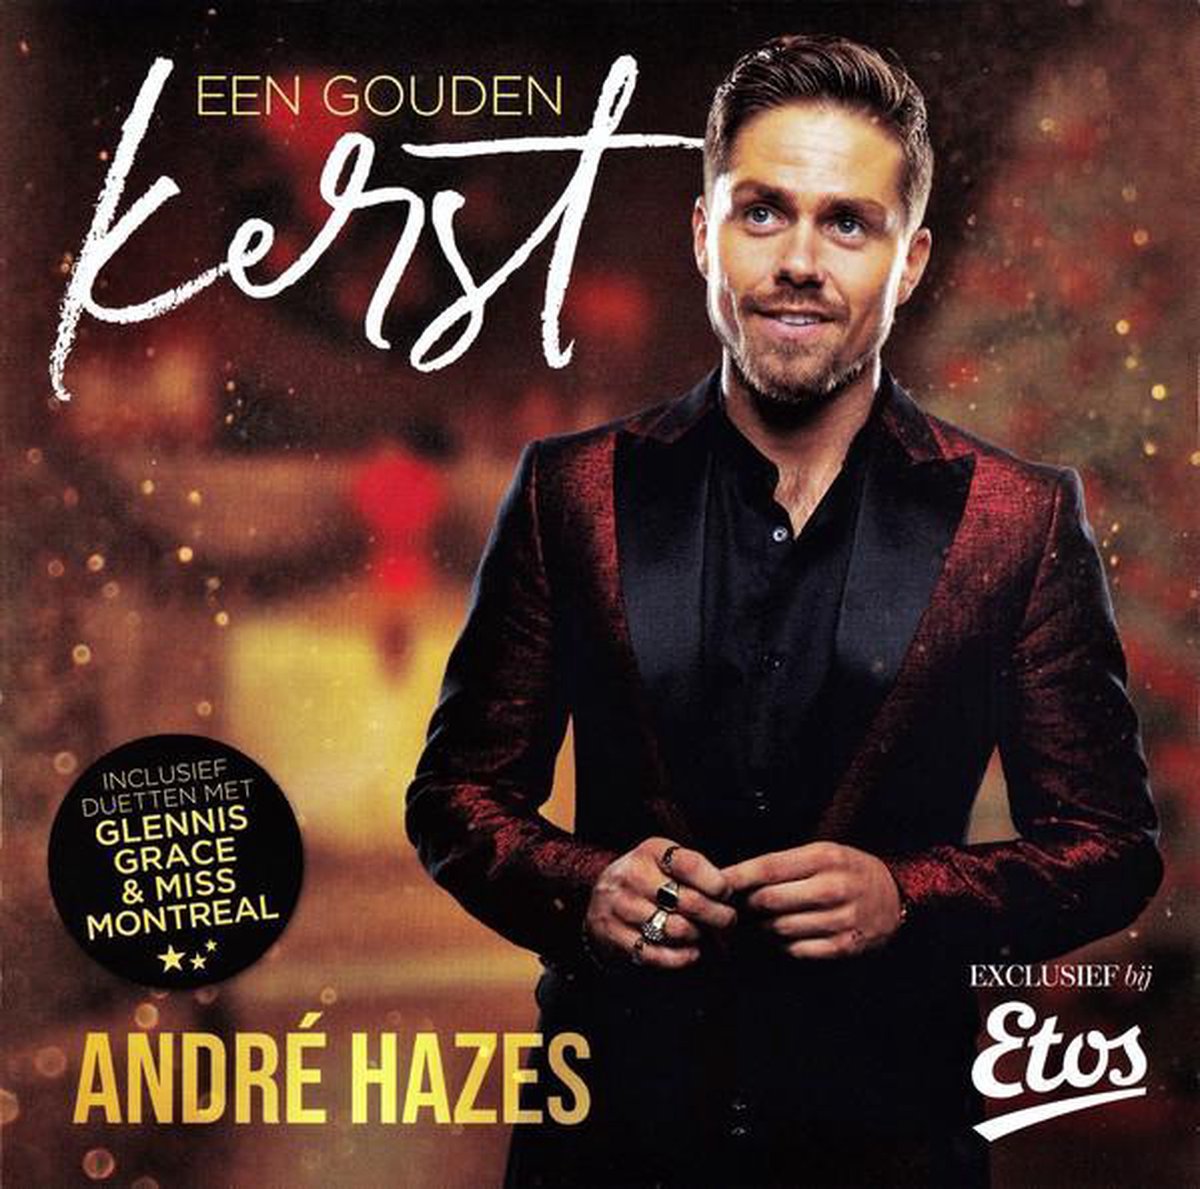 Leer ontploffing Rijd weg Een gouden kerst met Andre Hazes Jr., Glennis Grace & Miss Montreal | CD  (album) | Muziek | bol.com